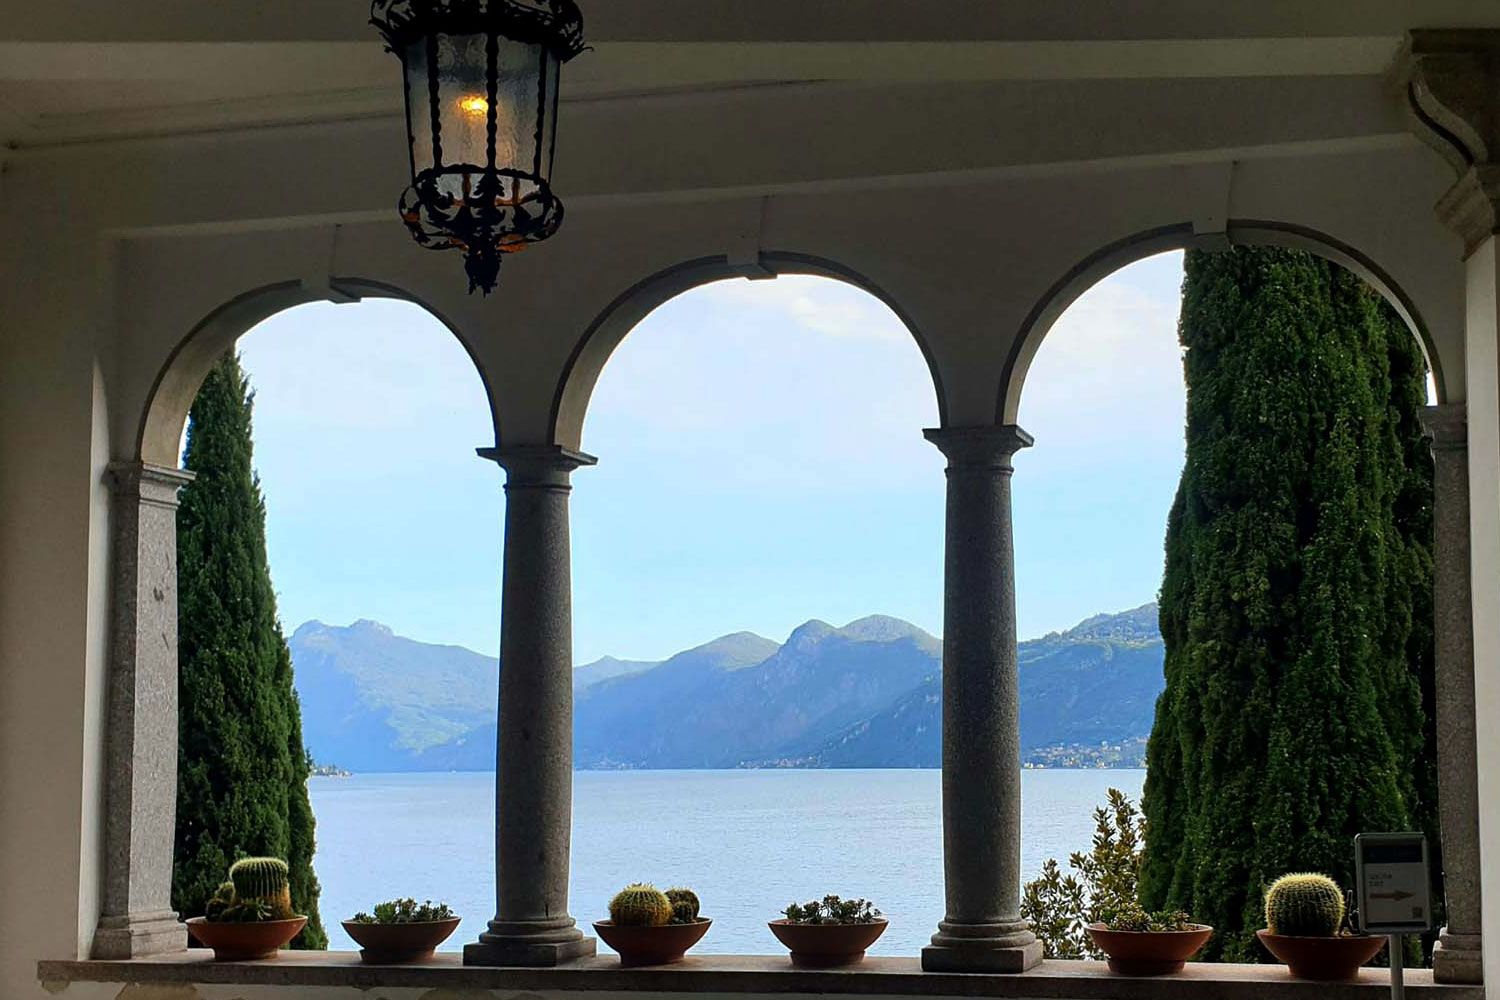 Varenna at Lake Como, Lombardy